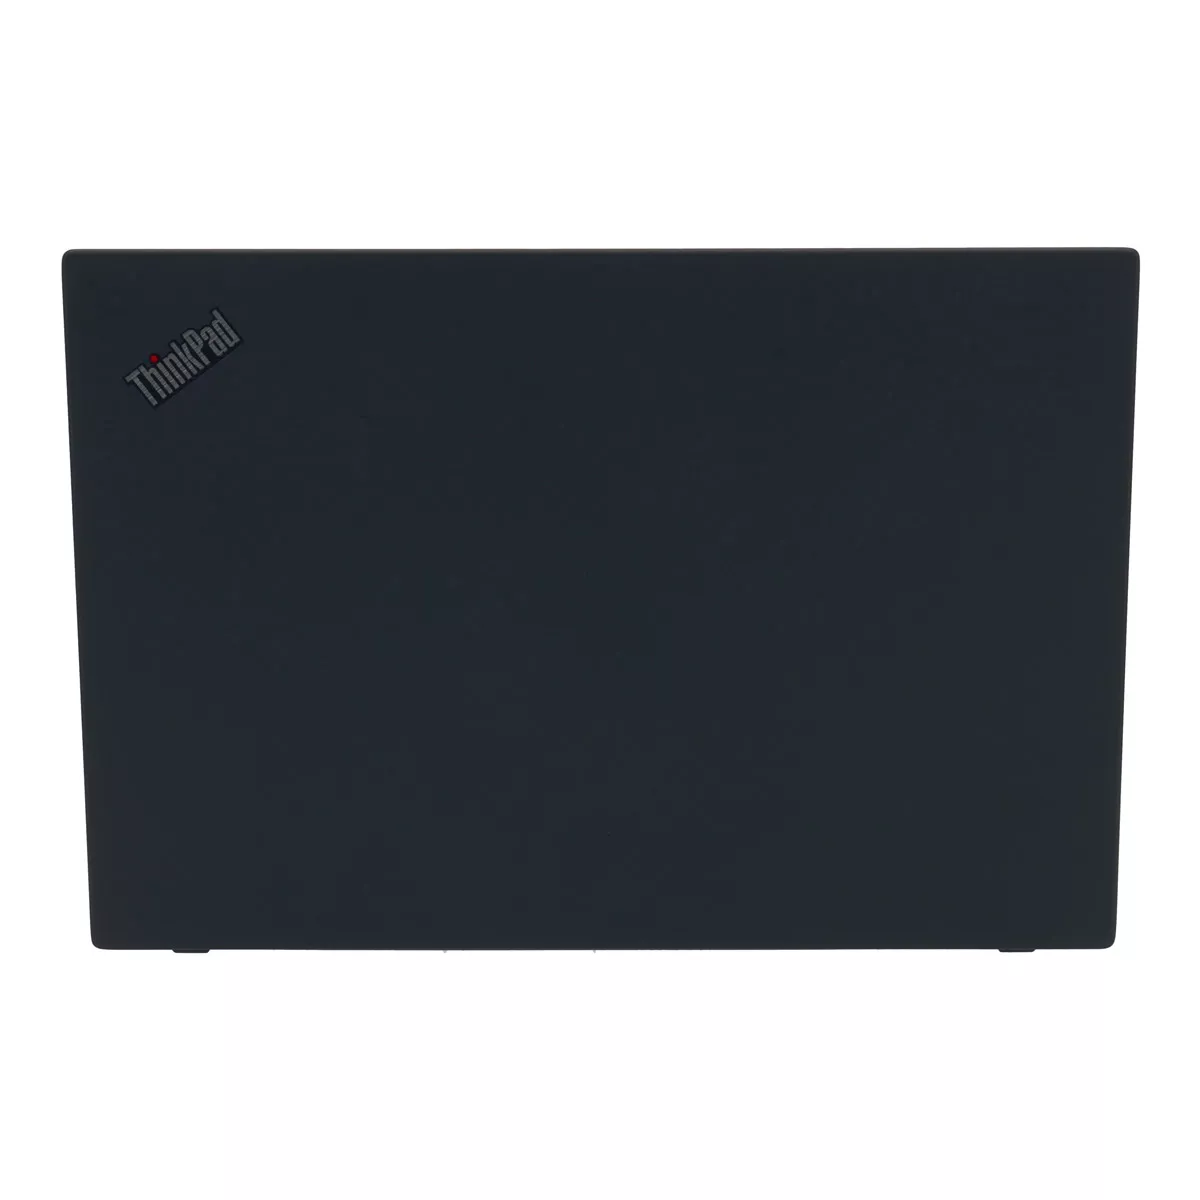 Lenovo ThinkPad T490 Core i5 8265U 8 GB 240 GB M.2 nVME SSD Webcam A